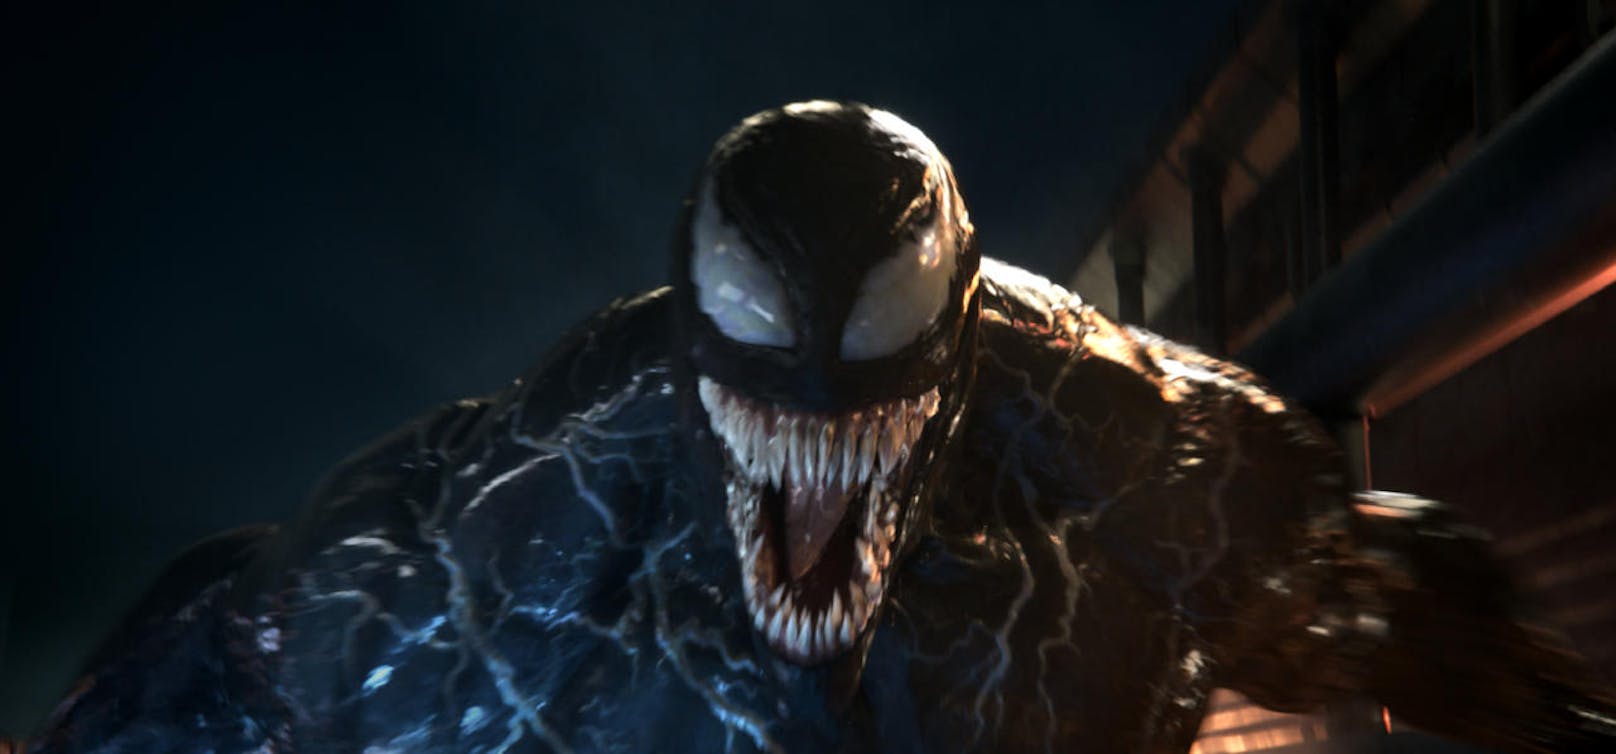 Ein Muskelberg mit spitzen Zähnen und Lust auf Action: Venom ist da!